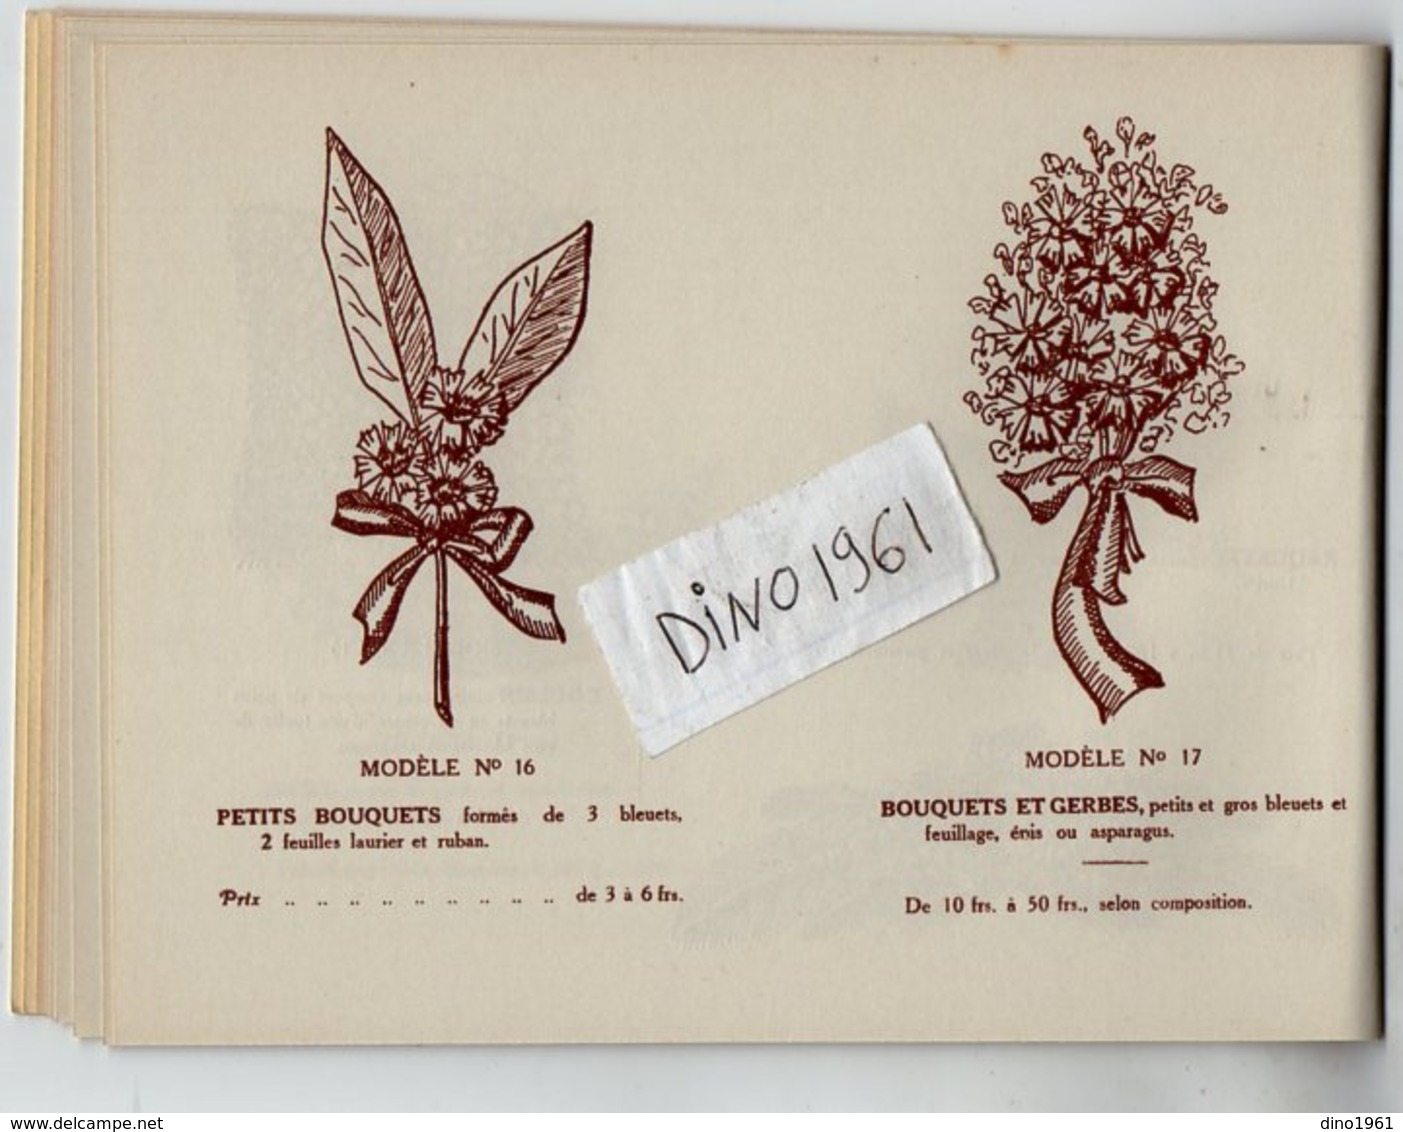 VP13.514 - MILITARIA - PARIS 1935 - Document commercial de l'Association le ¨ LE BLEUET DE FRANCE ¨